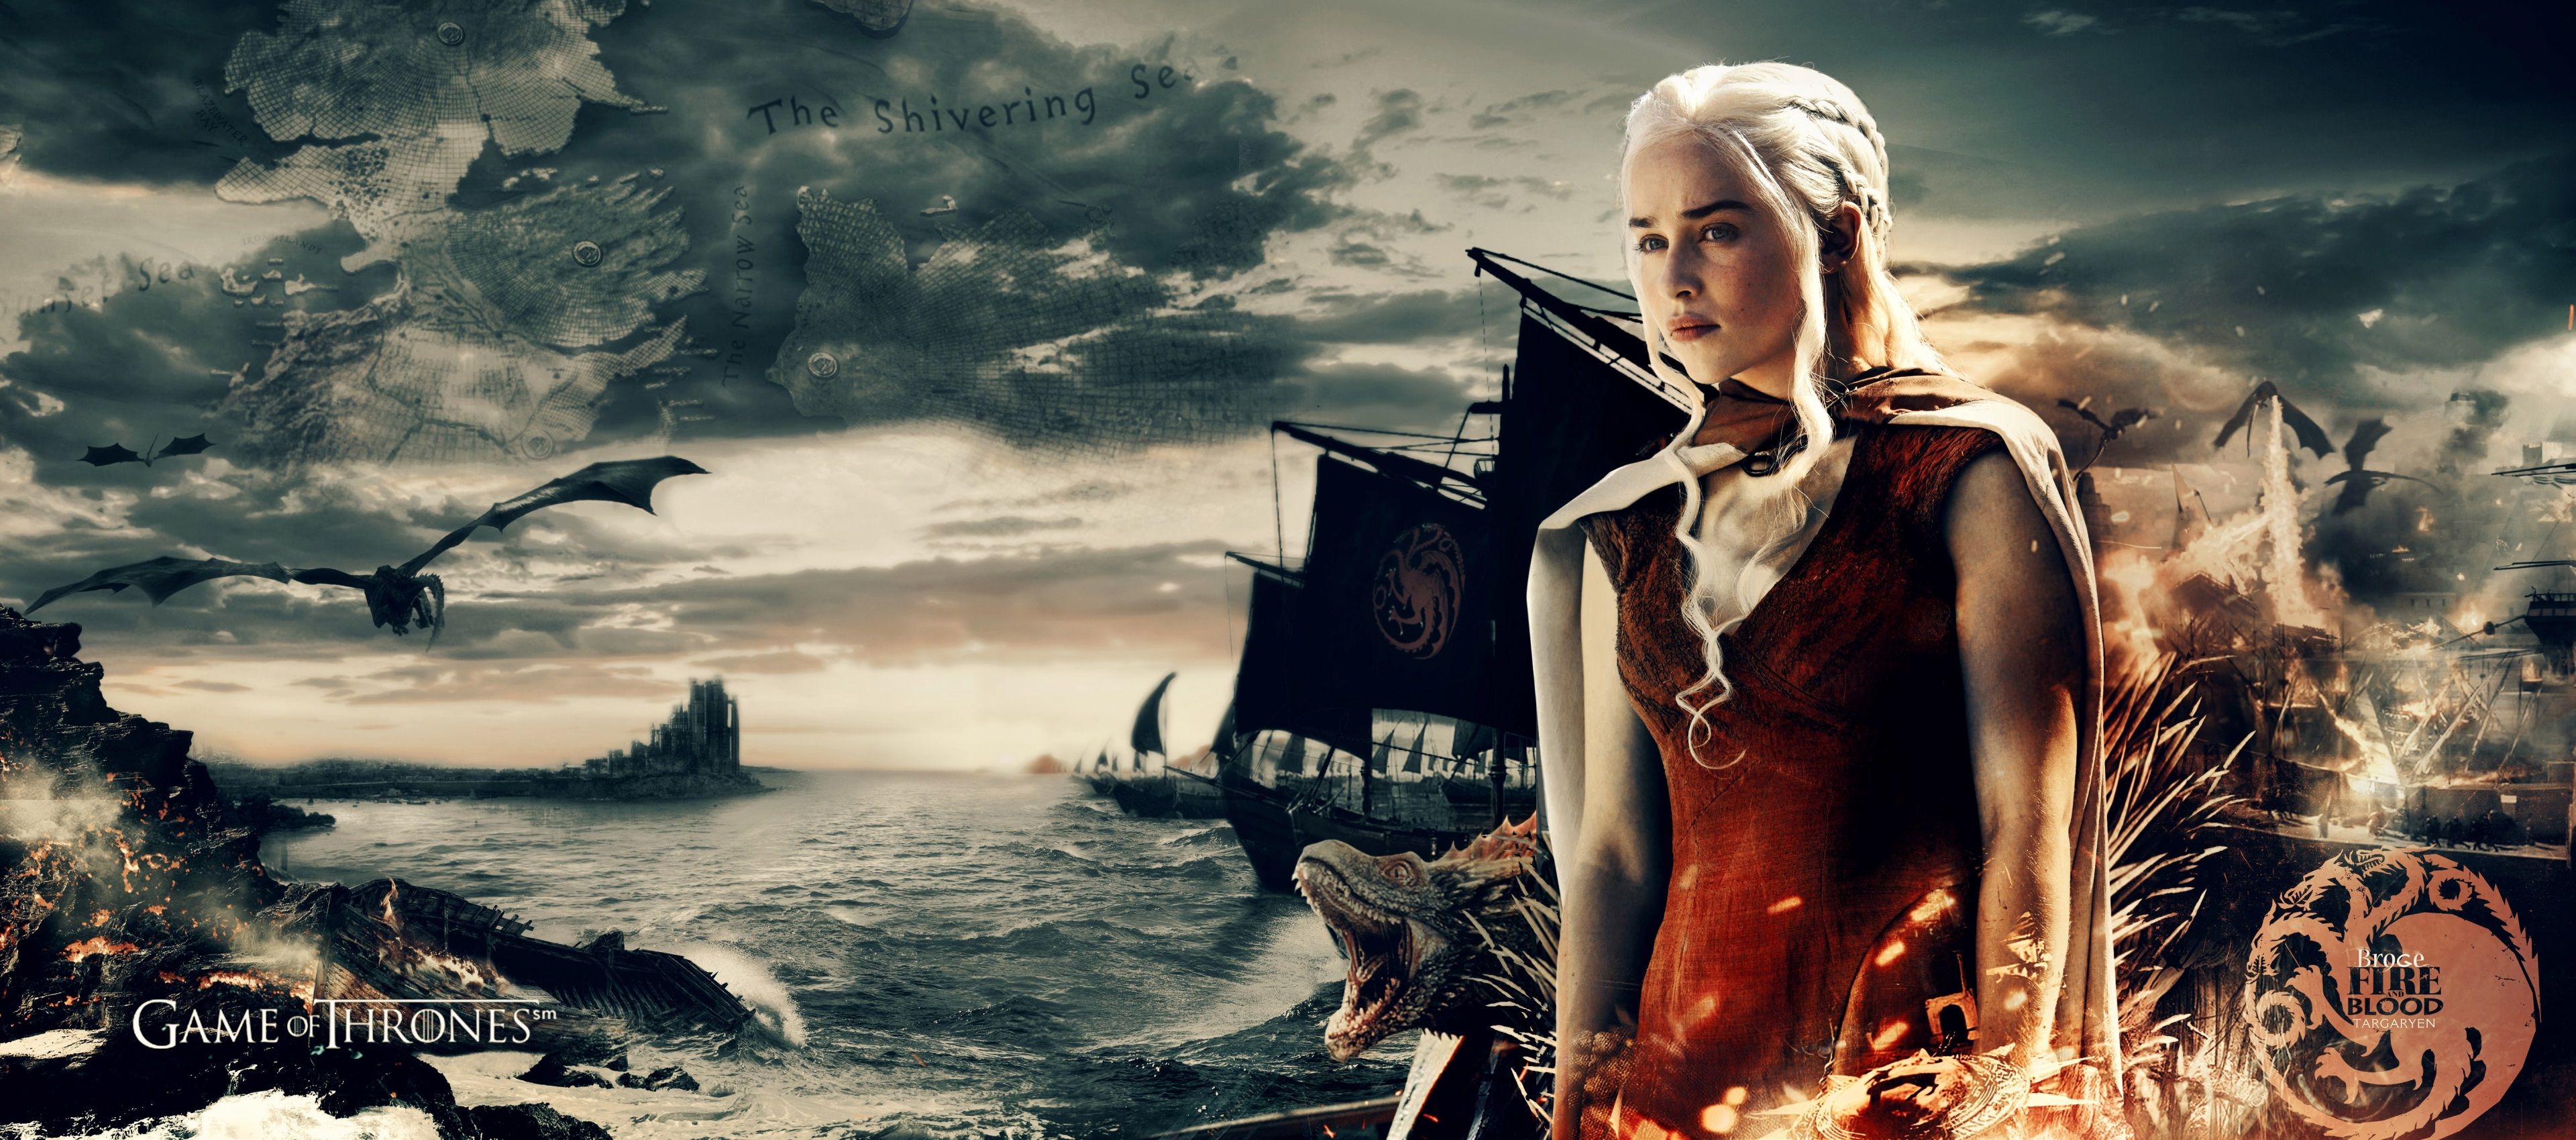 Hình nền Daenerys Targaryen - Một trong những nhân vật nữ mạnh mẽ và kiên cường nhất trong Game of Thrones. Hãy xem hình nền của cô ấy để cảm nhận sức mạnh và quyết tâm từ chính hình ảnh của cô ấy.